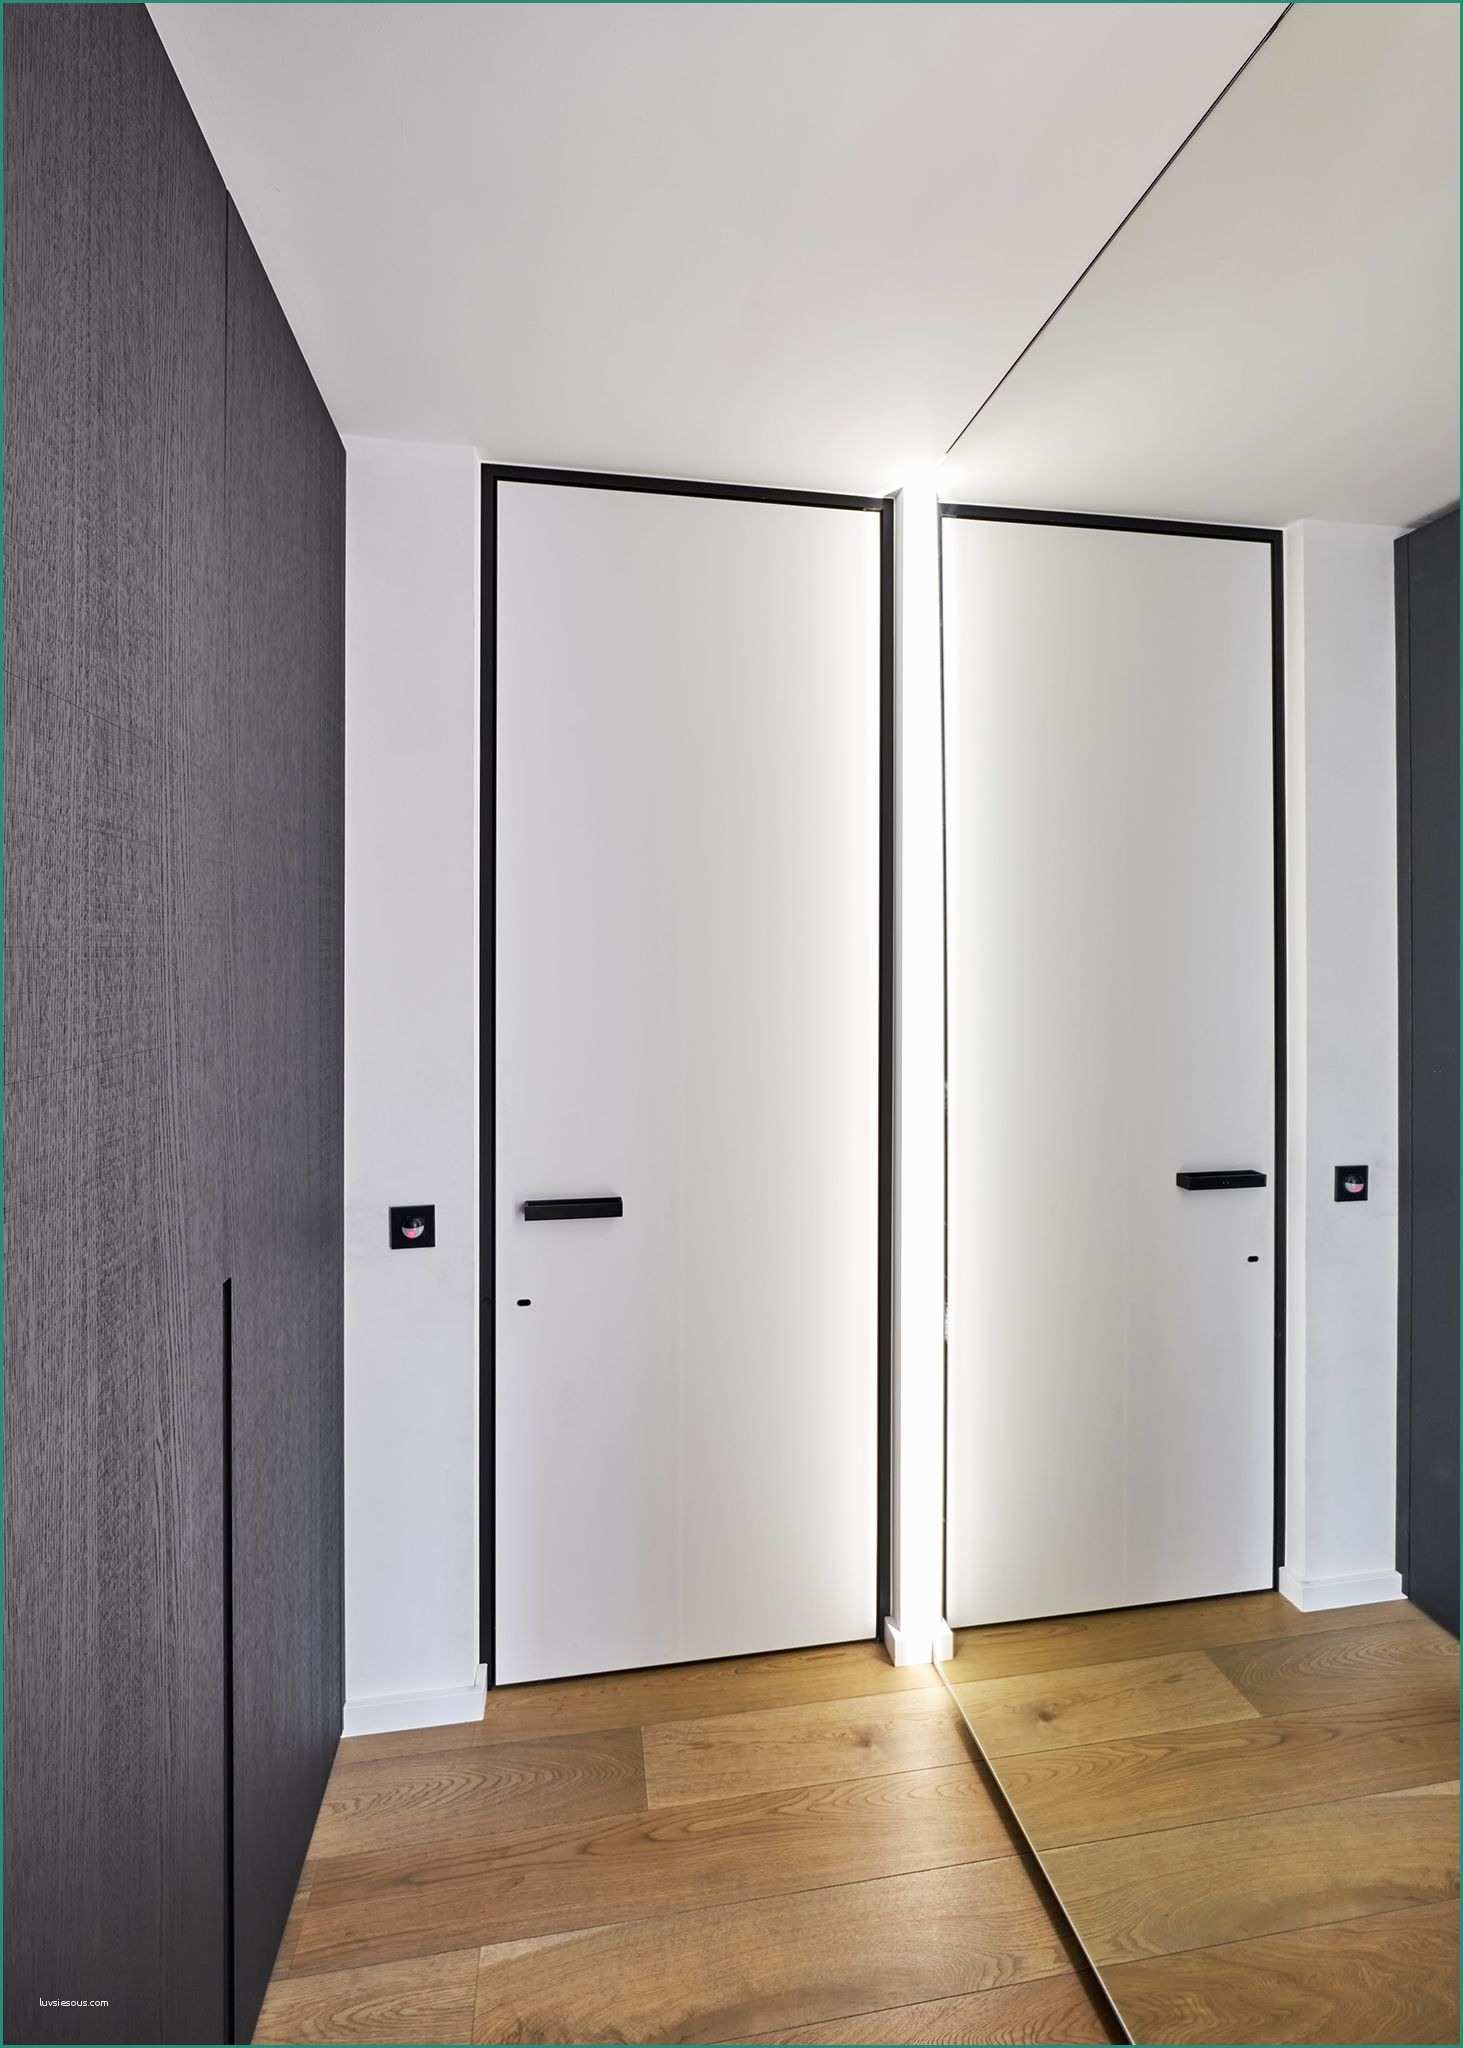 Pareti Divisorie In Plexiglass Per Interni E 8 Interior Doors Ideas for Your Home Interior Pinterest